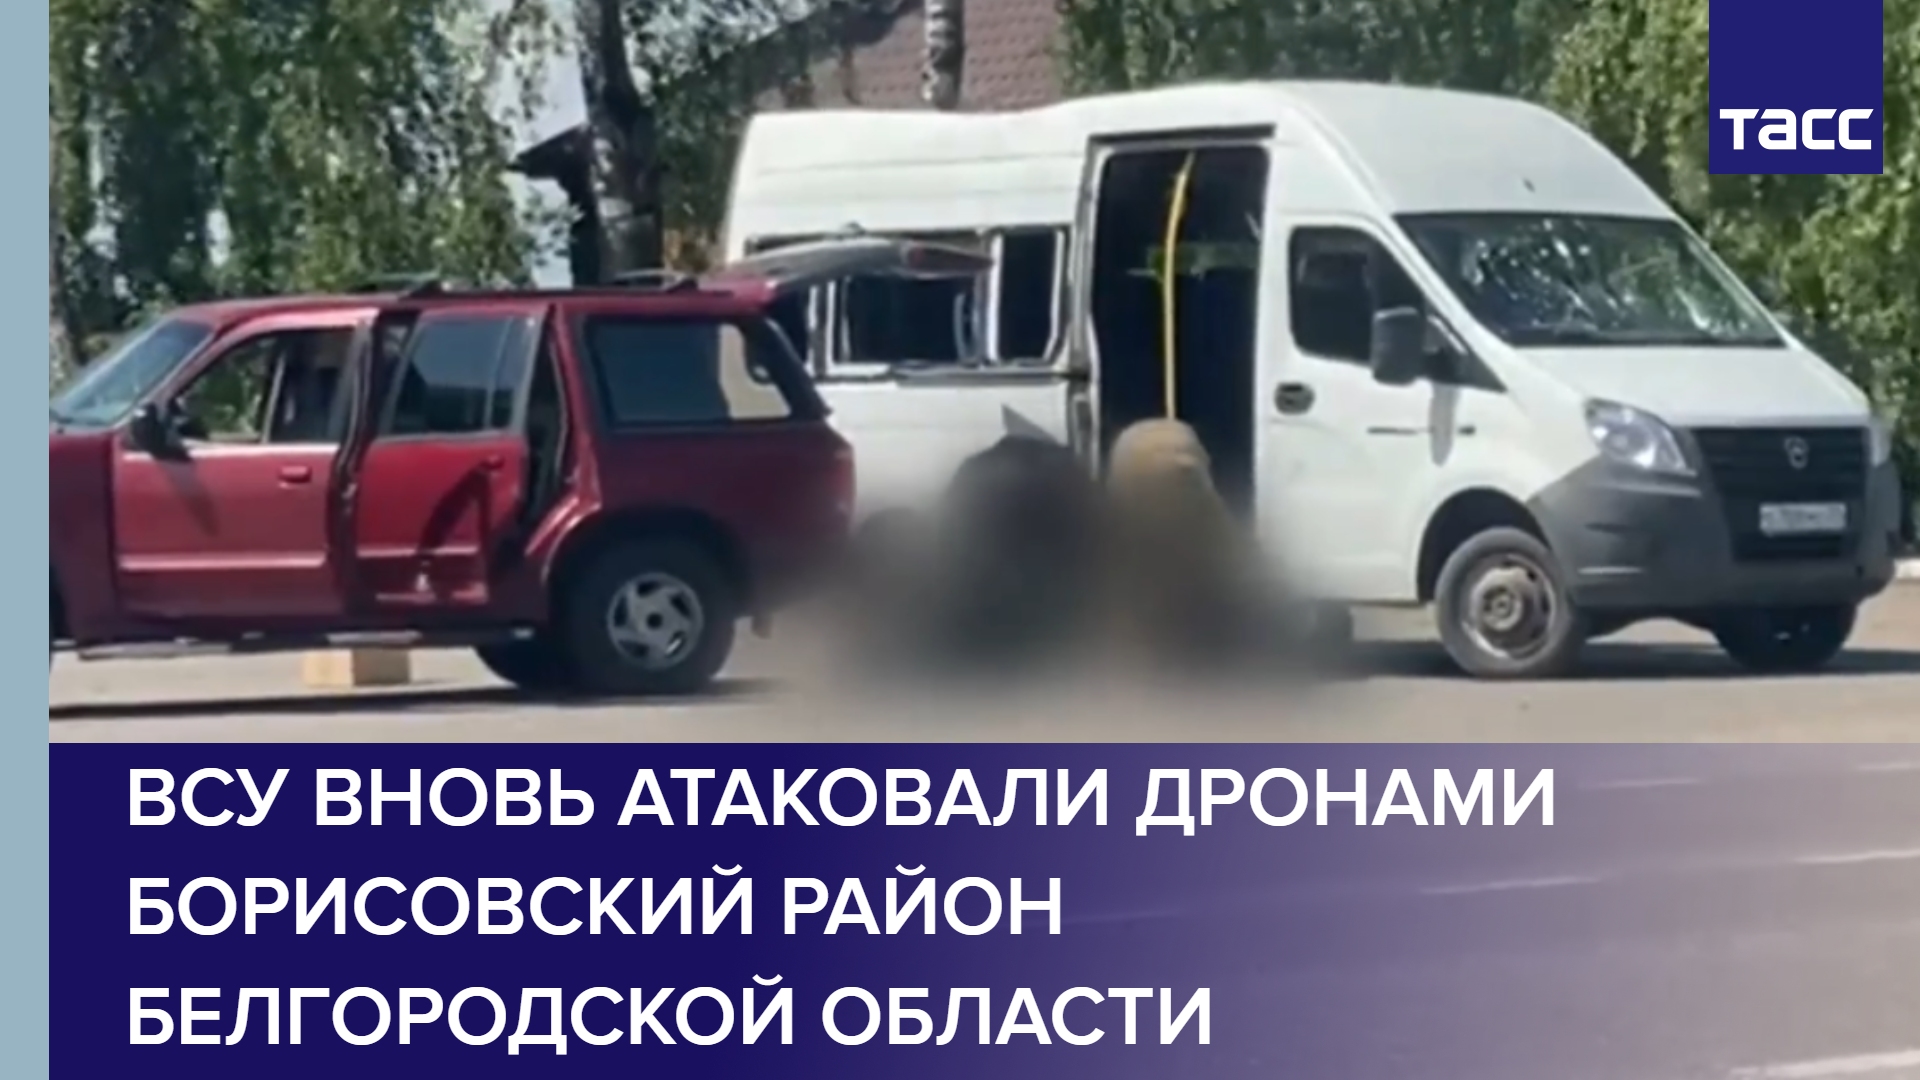 ВСУ вновь атаковали дронами Борисовский район Белгородской области